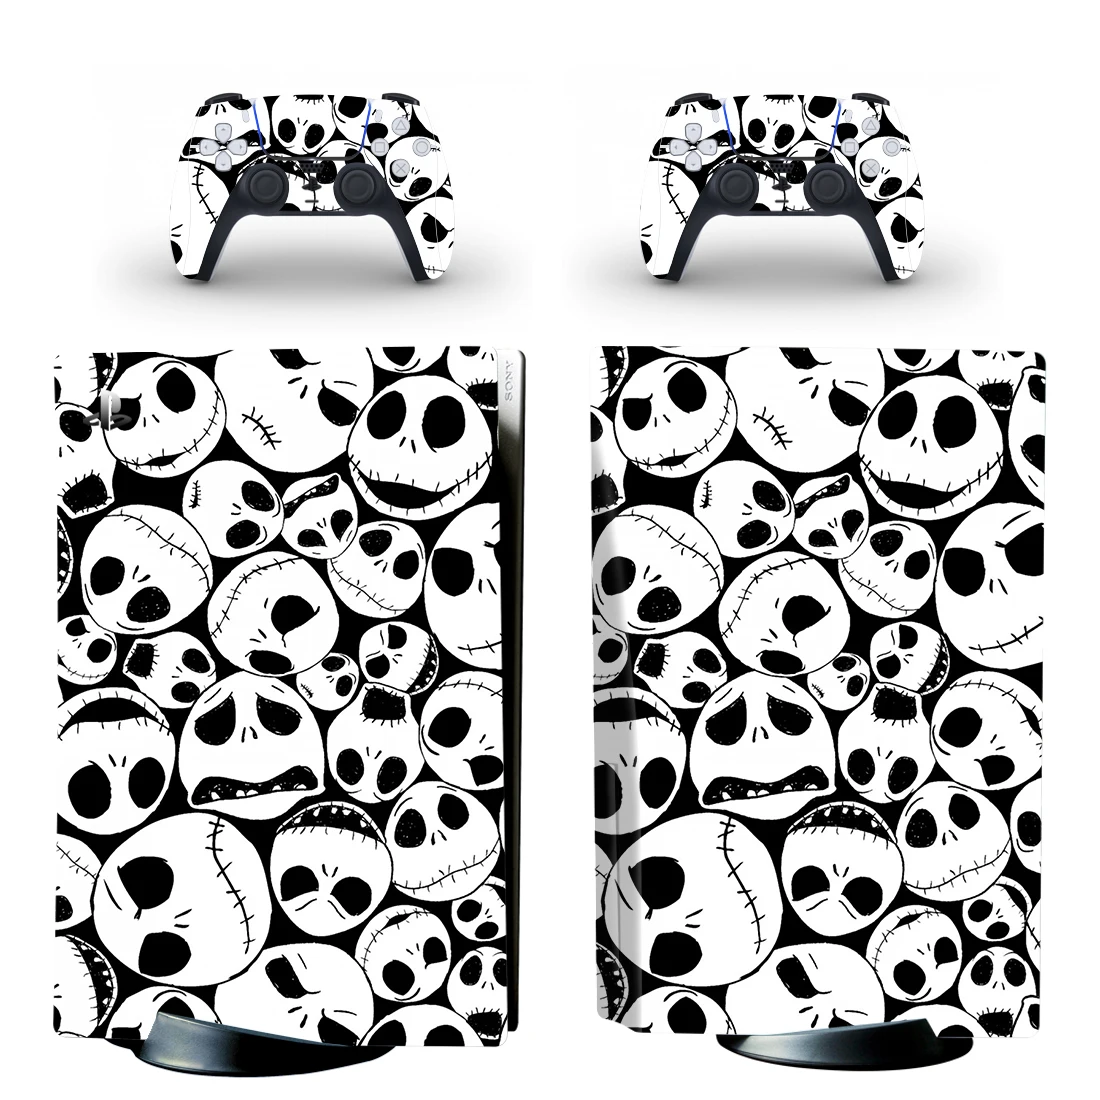 Наклейка с изображением черепа призрака PS5 Виниловая наклейка для консоли PlayStation